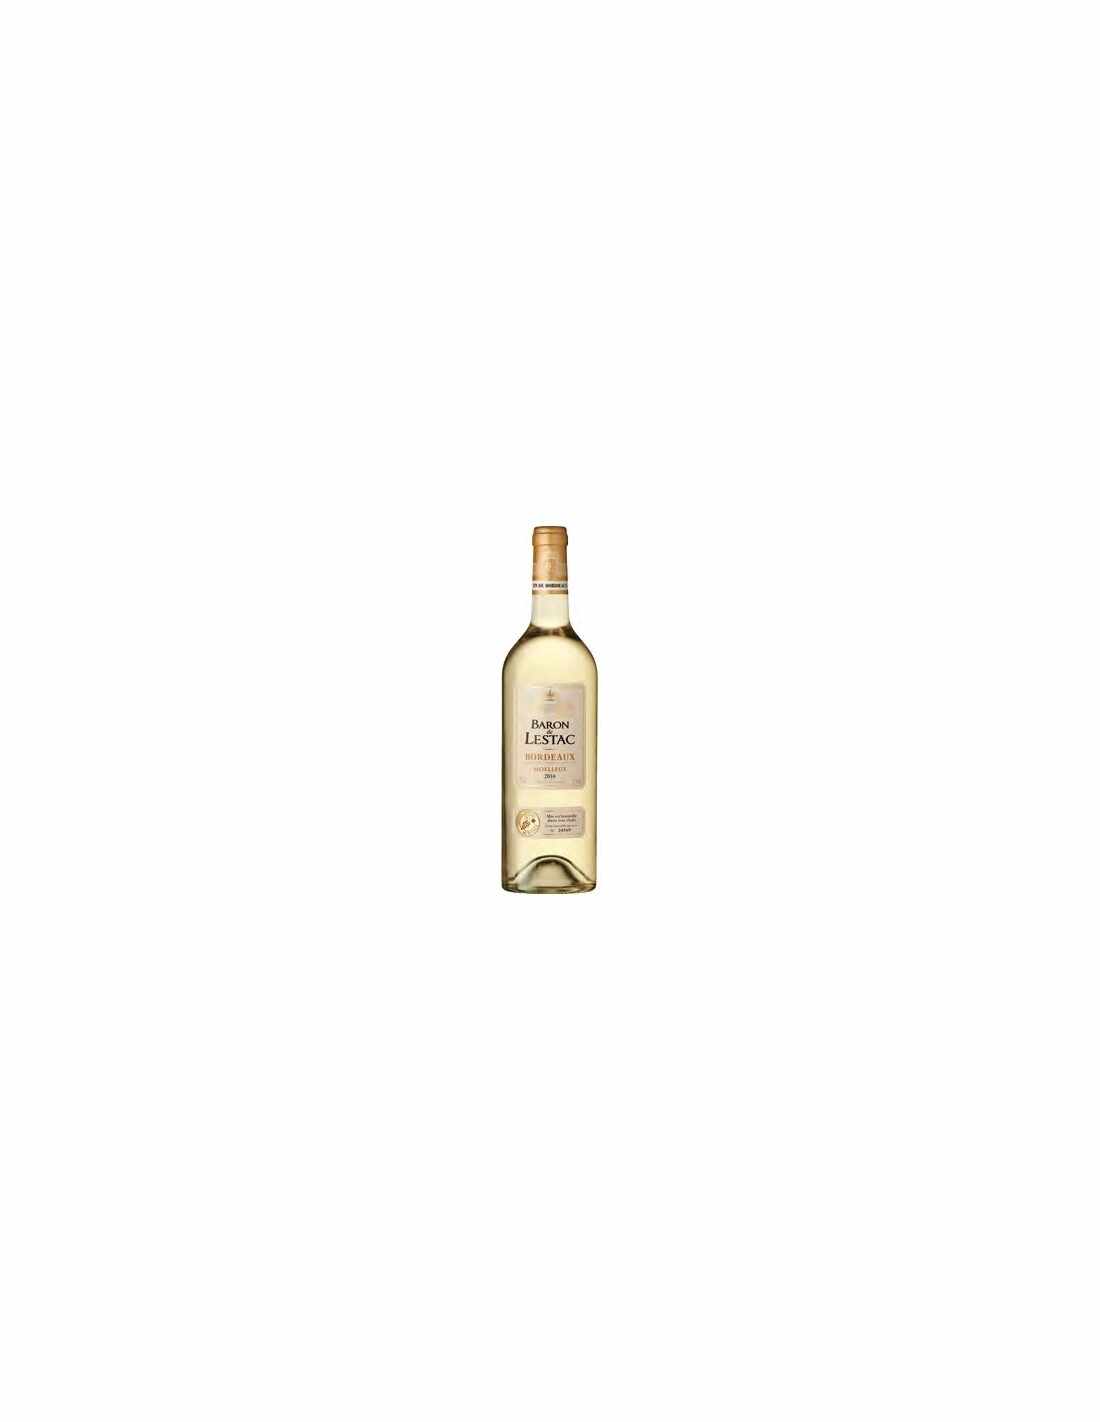 Vin alb demidulce, Moelleux, Baron de Lestac Bordeaux, 0.75L, 12.5% alc., Franta